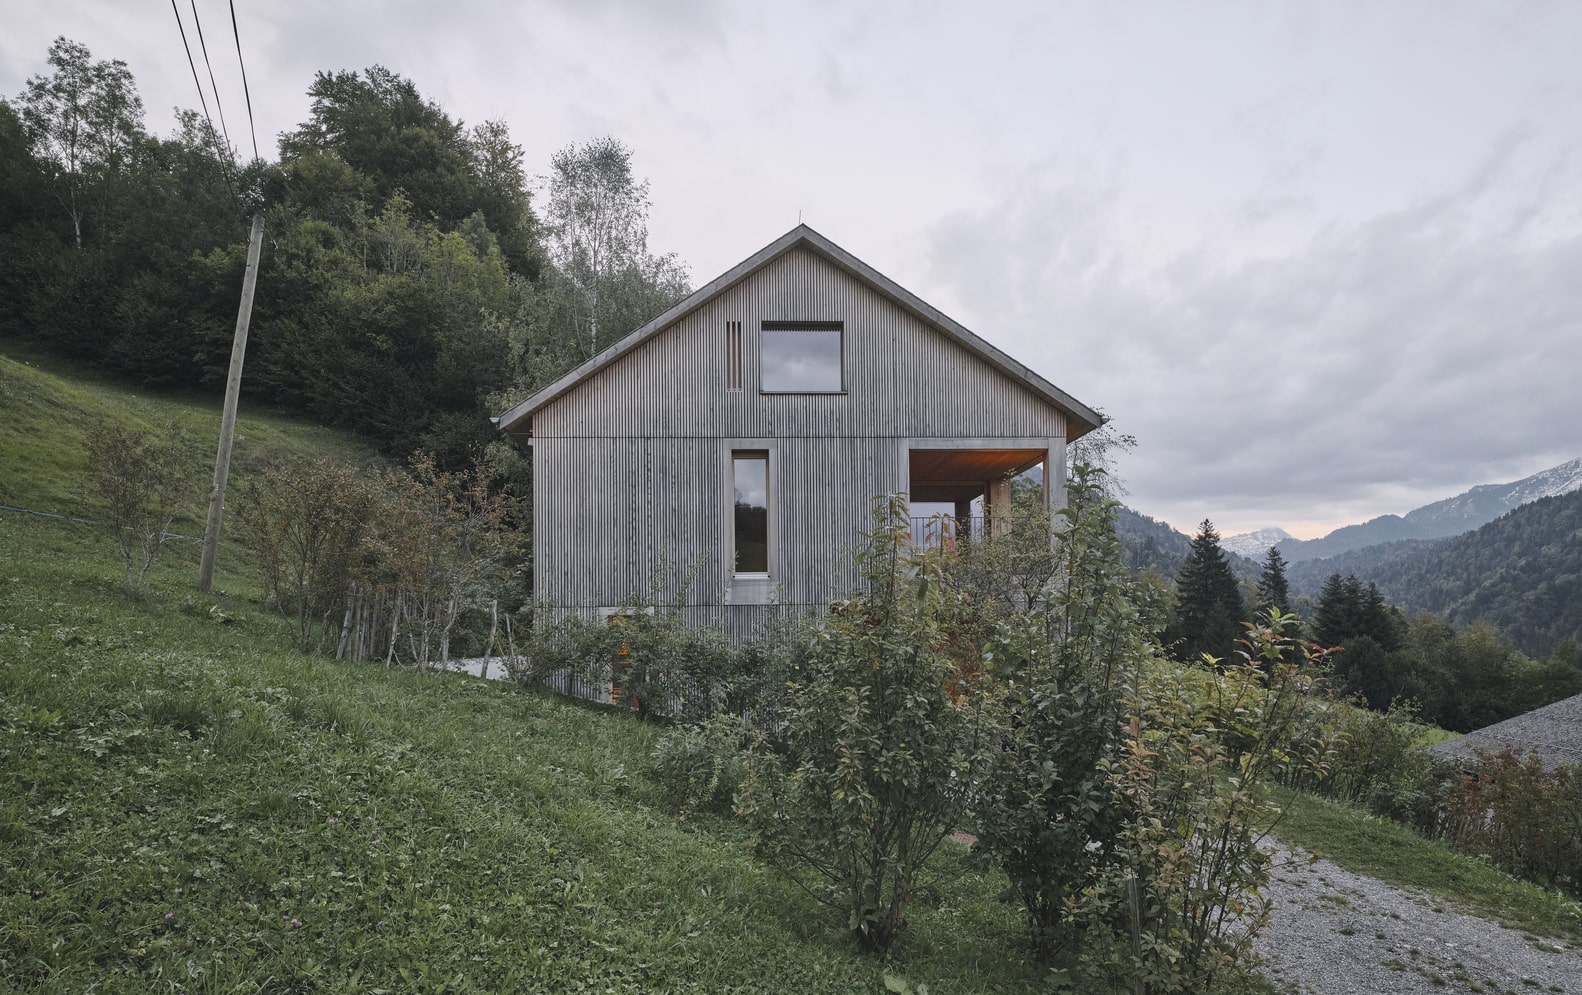 Wohnhaus Hittisau w górzystym regionie Austrii